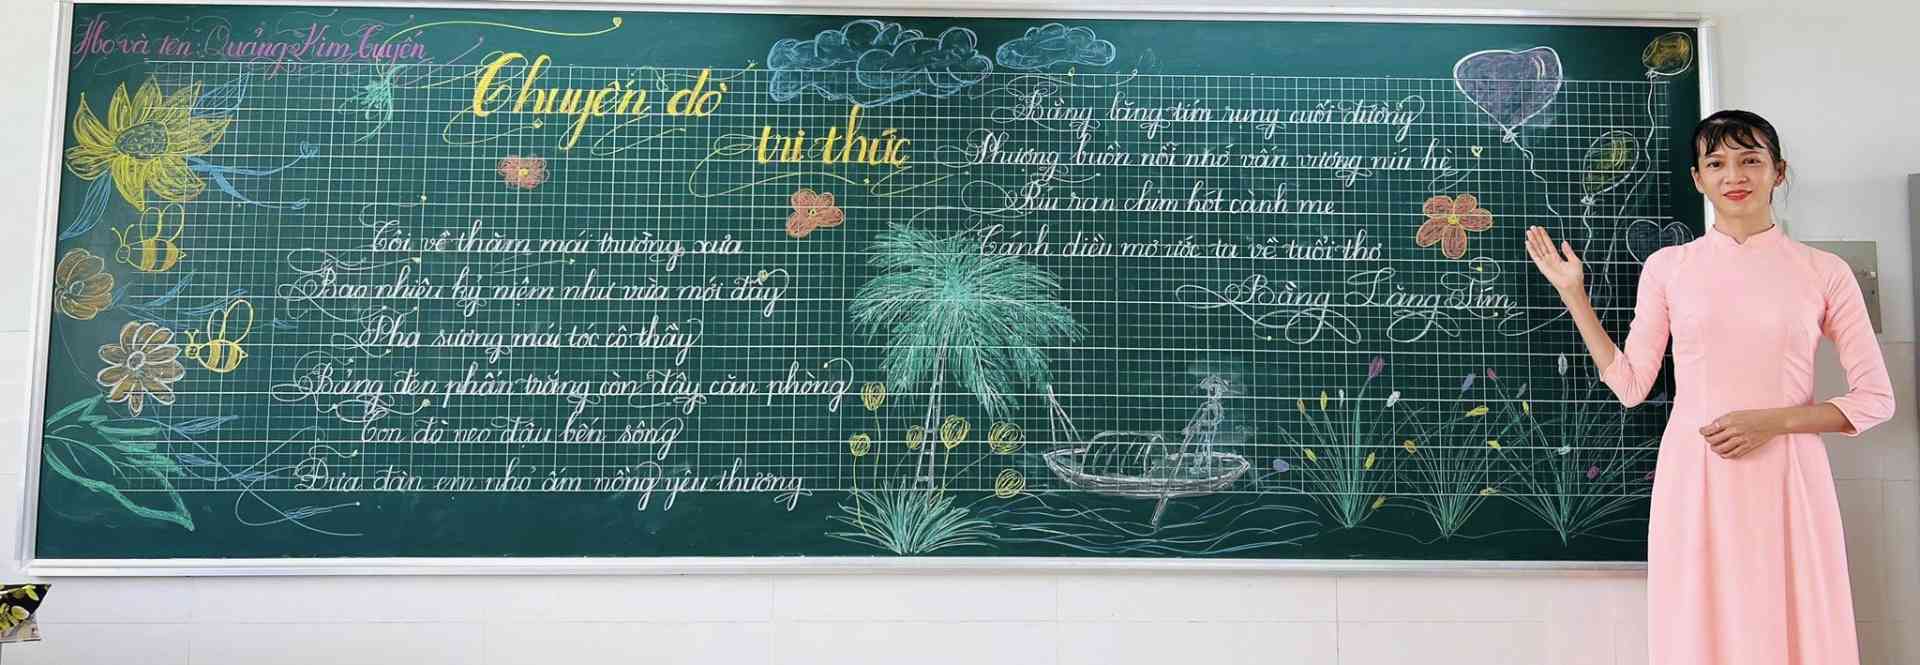 Thầy cô giáo tham gia hội thi Viết chữ đẹp trên bảng